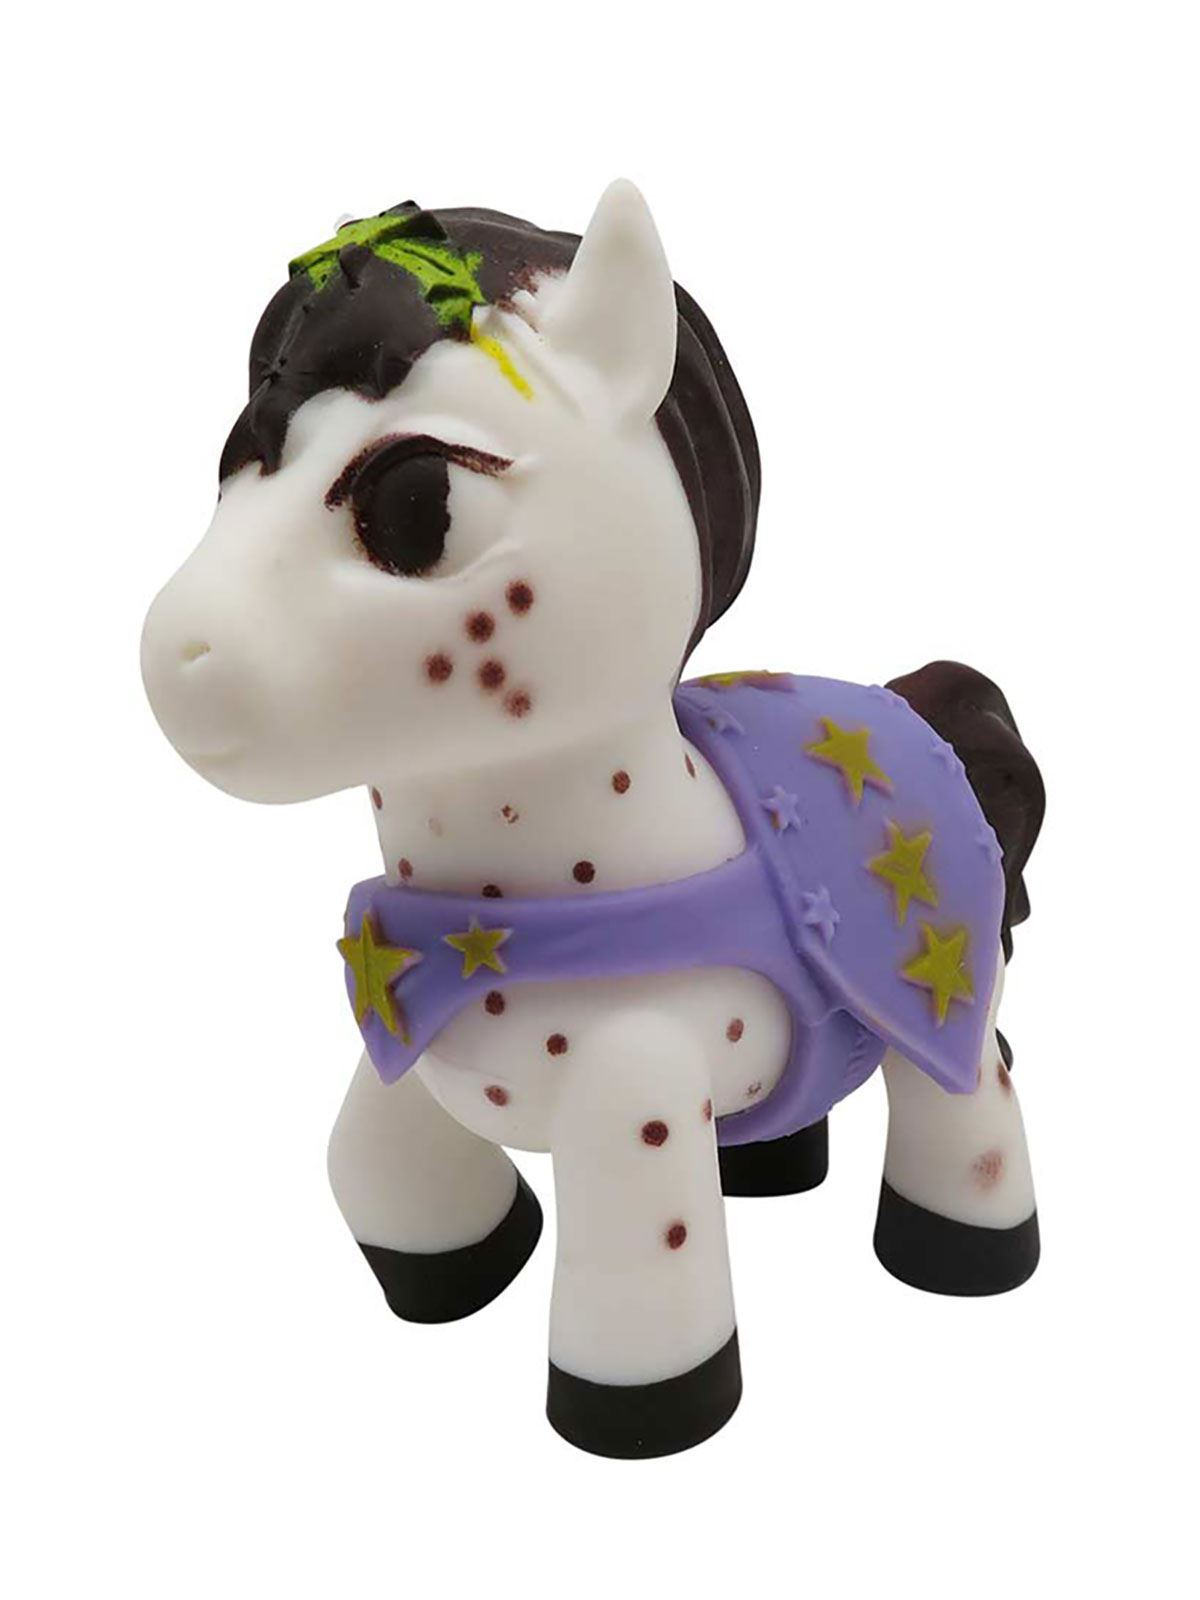 Sunman Oyuncak Diramix Dress Your Pony Kostümlü Figürler - Luna Beyaz